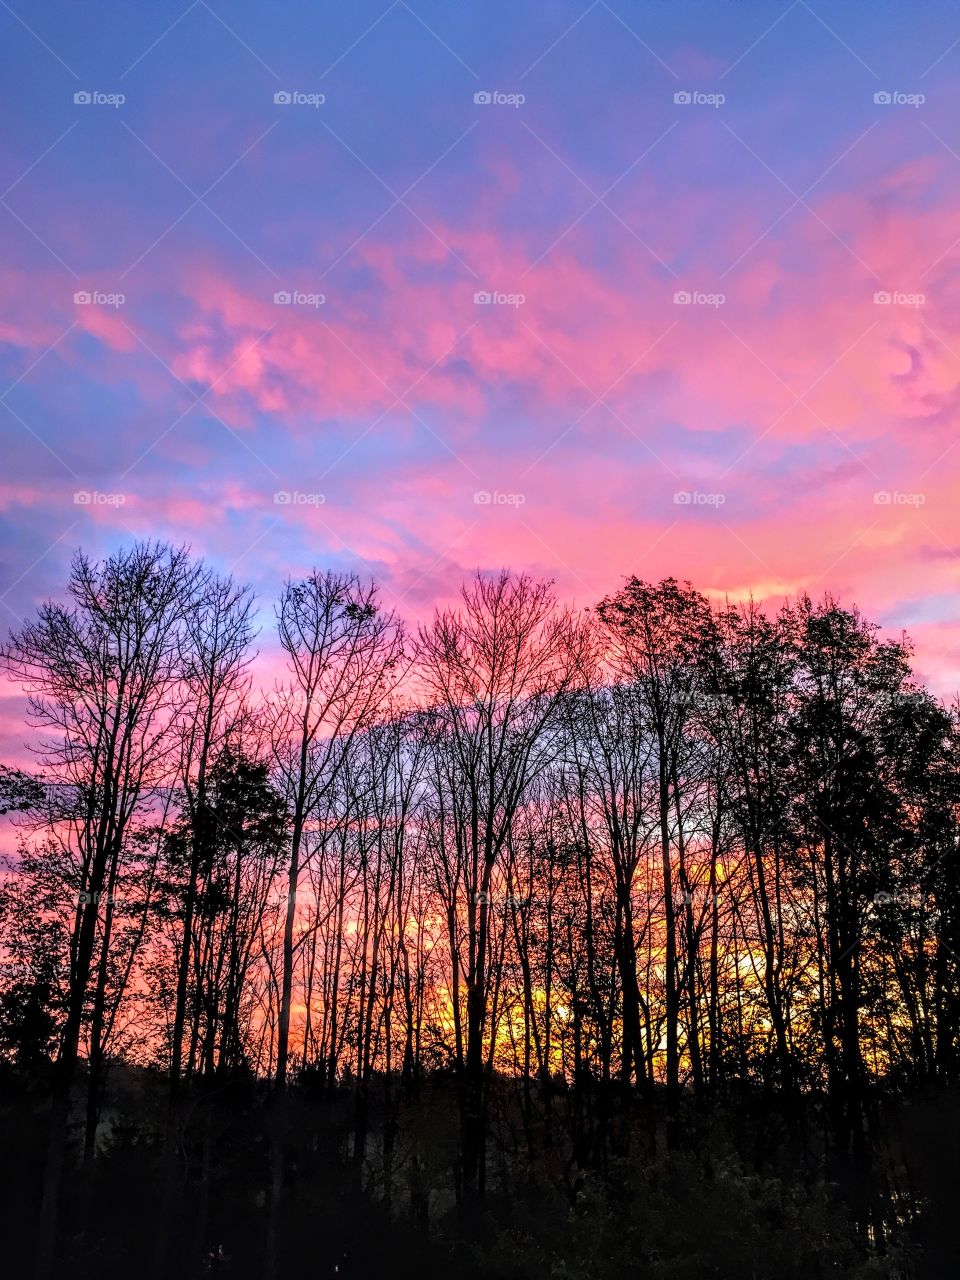 Sunrise
Pink sky
